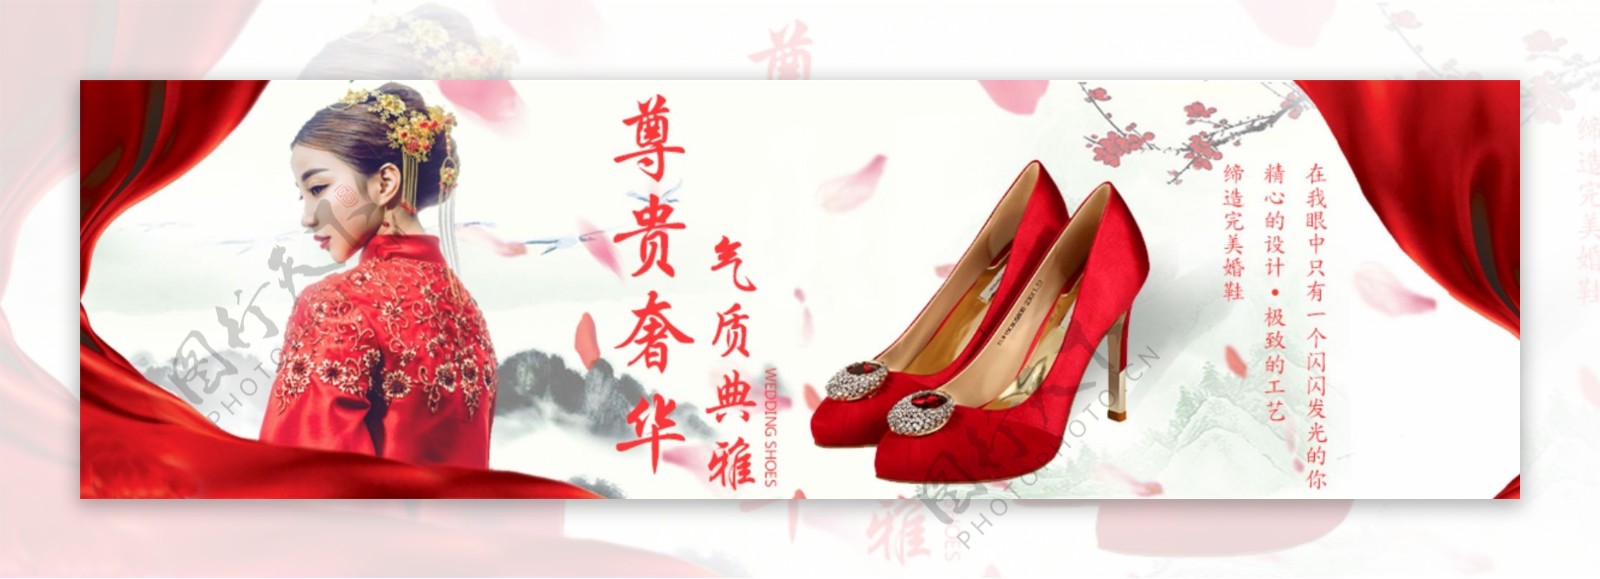 红色高跟鞋婚鞋banner图背景图